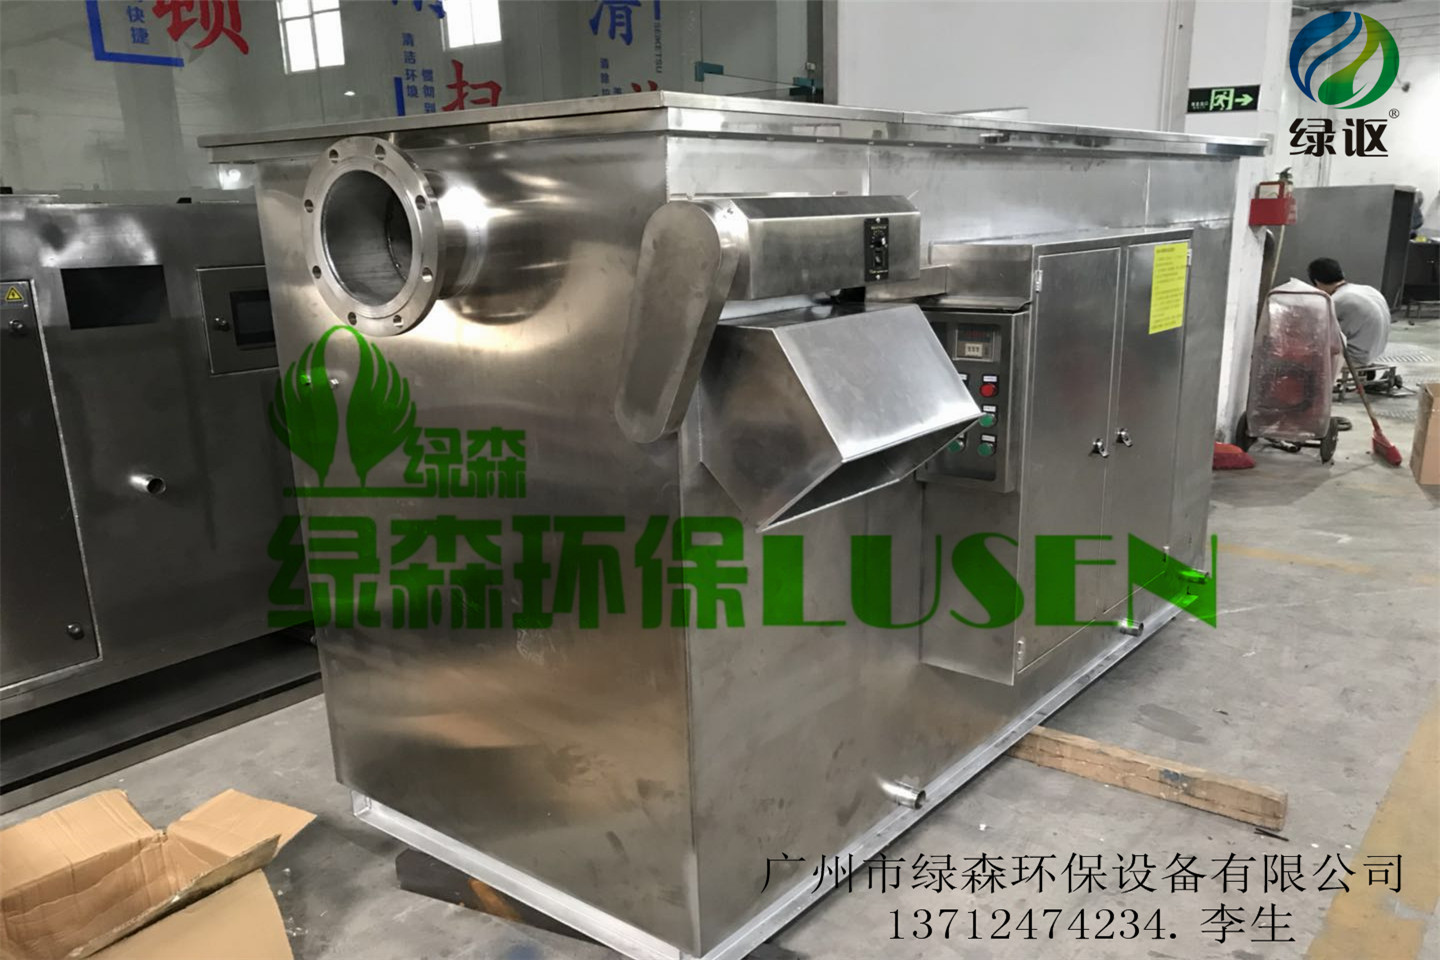 广州市惠州餐饮用全自动油水分离设备厂家厂家惠州餐饮用全自动油水分离设备厂家.绿森厂家